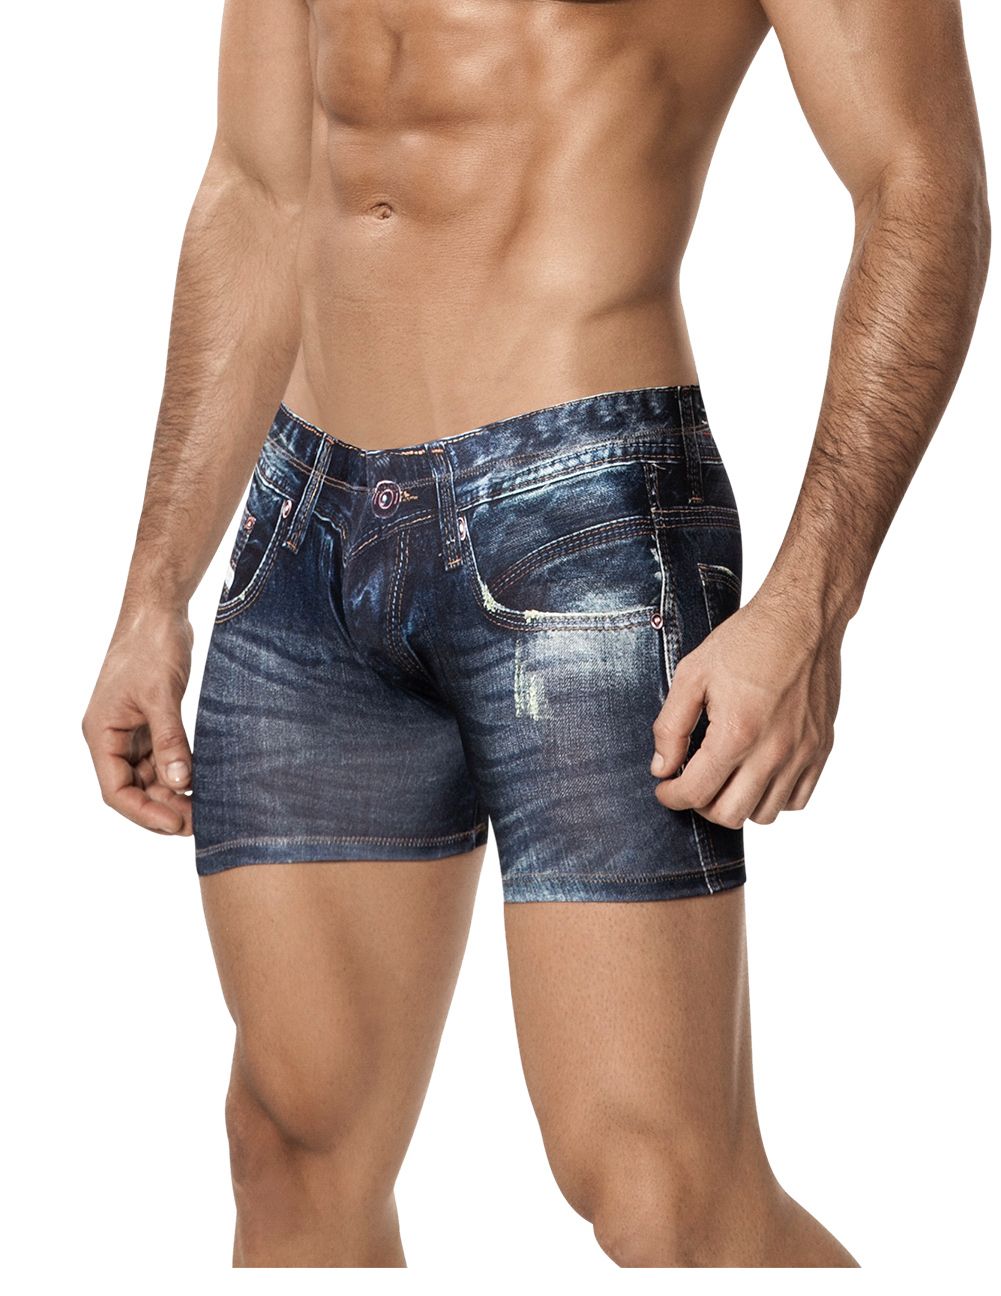 Clever Indigo jeans brief  Denim underwear men - Menwantmore